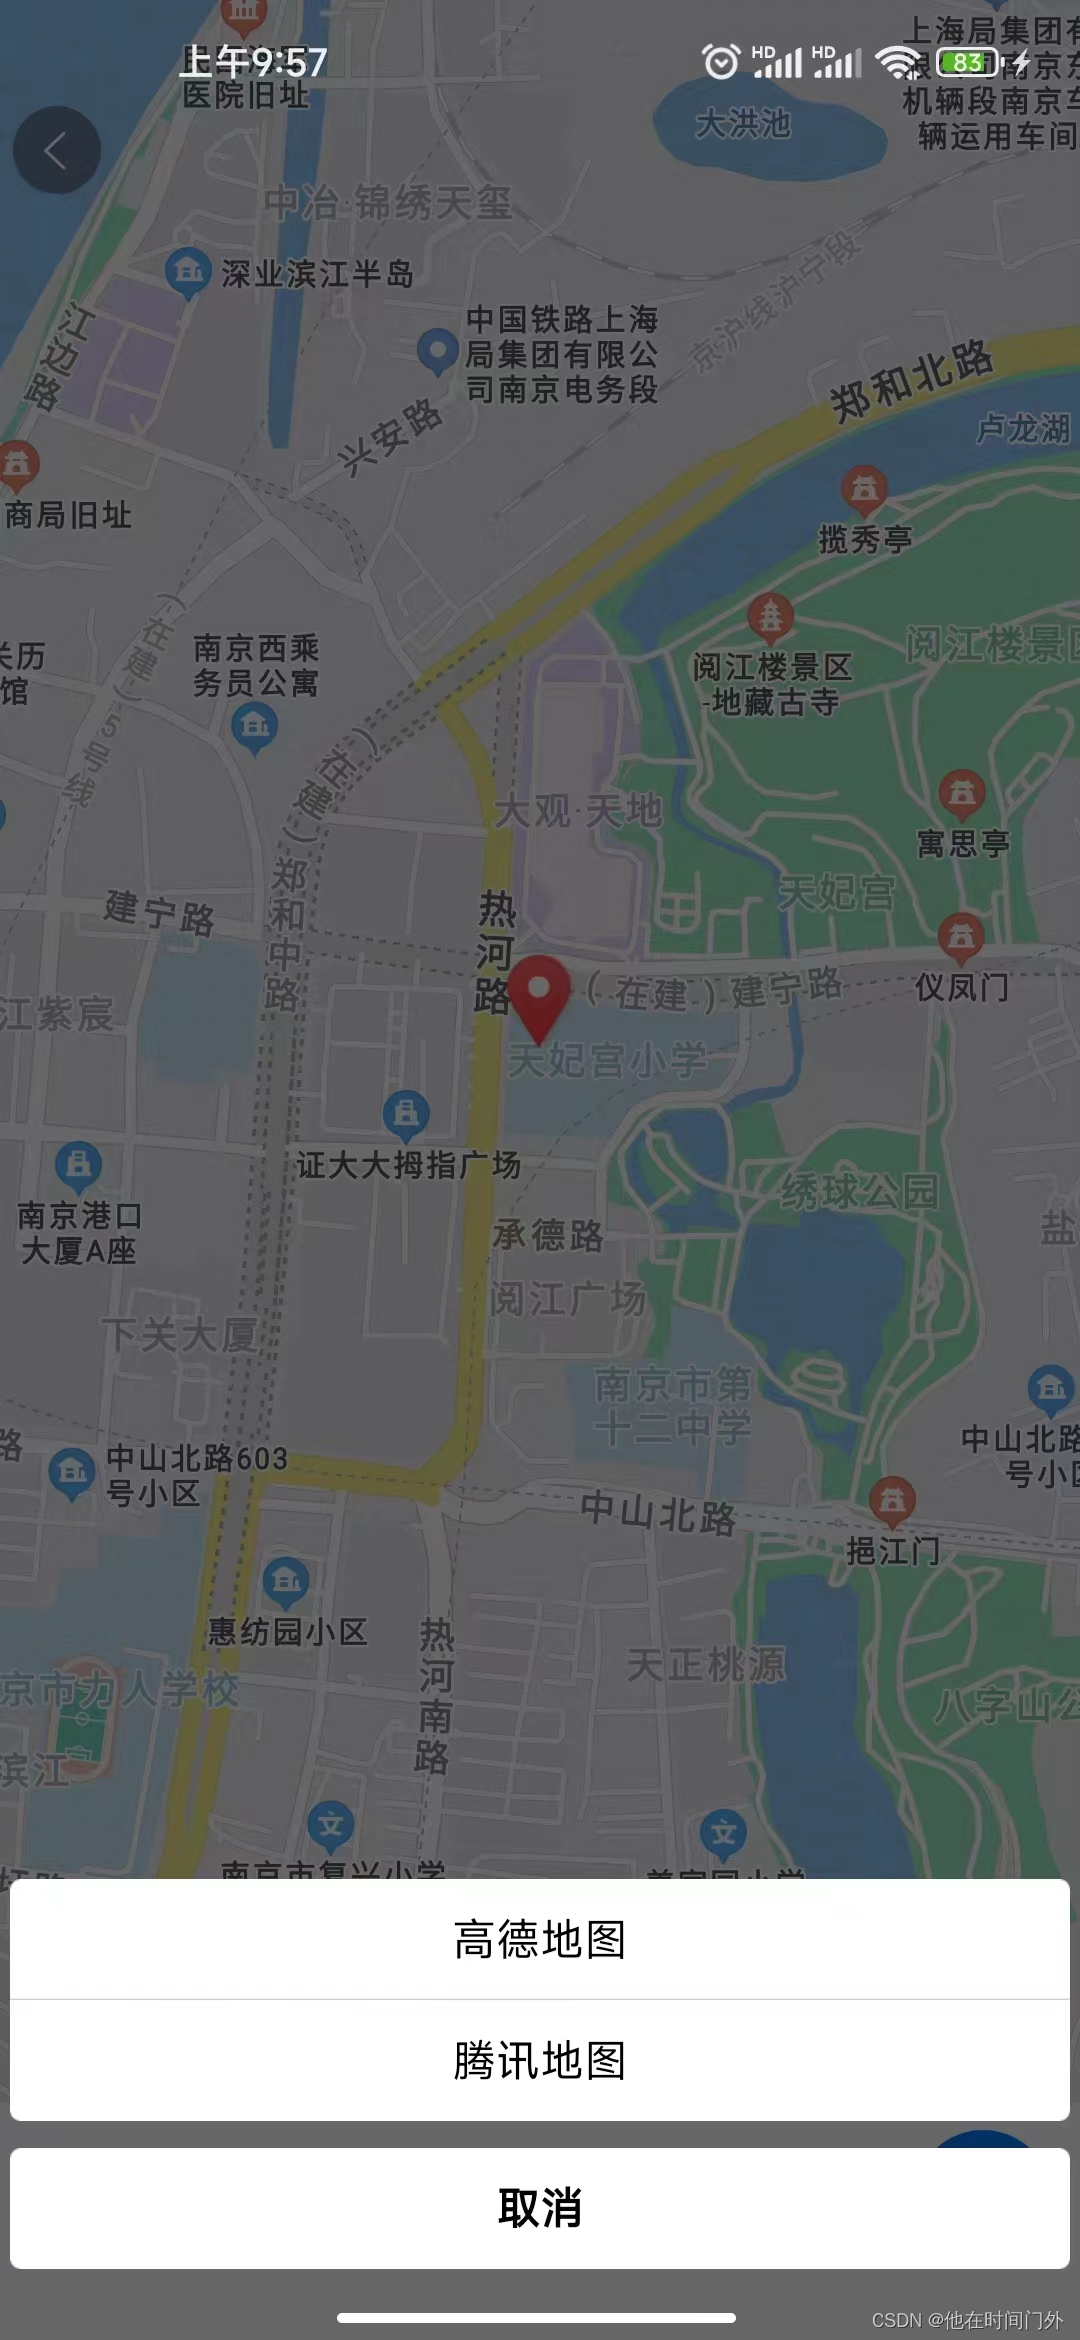 Uni-app 调用微信地图导航功能【有图】